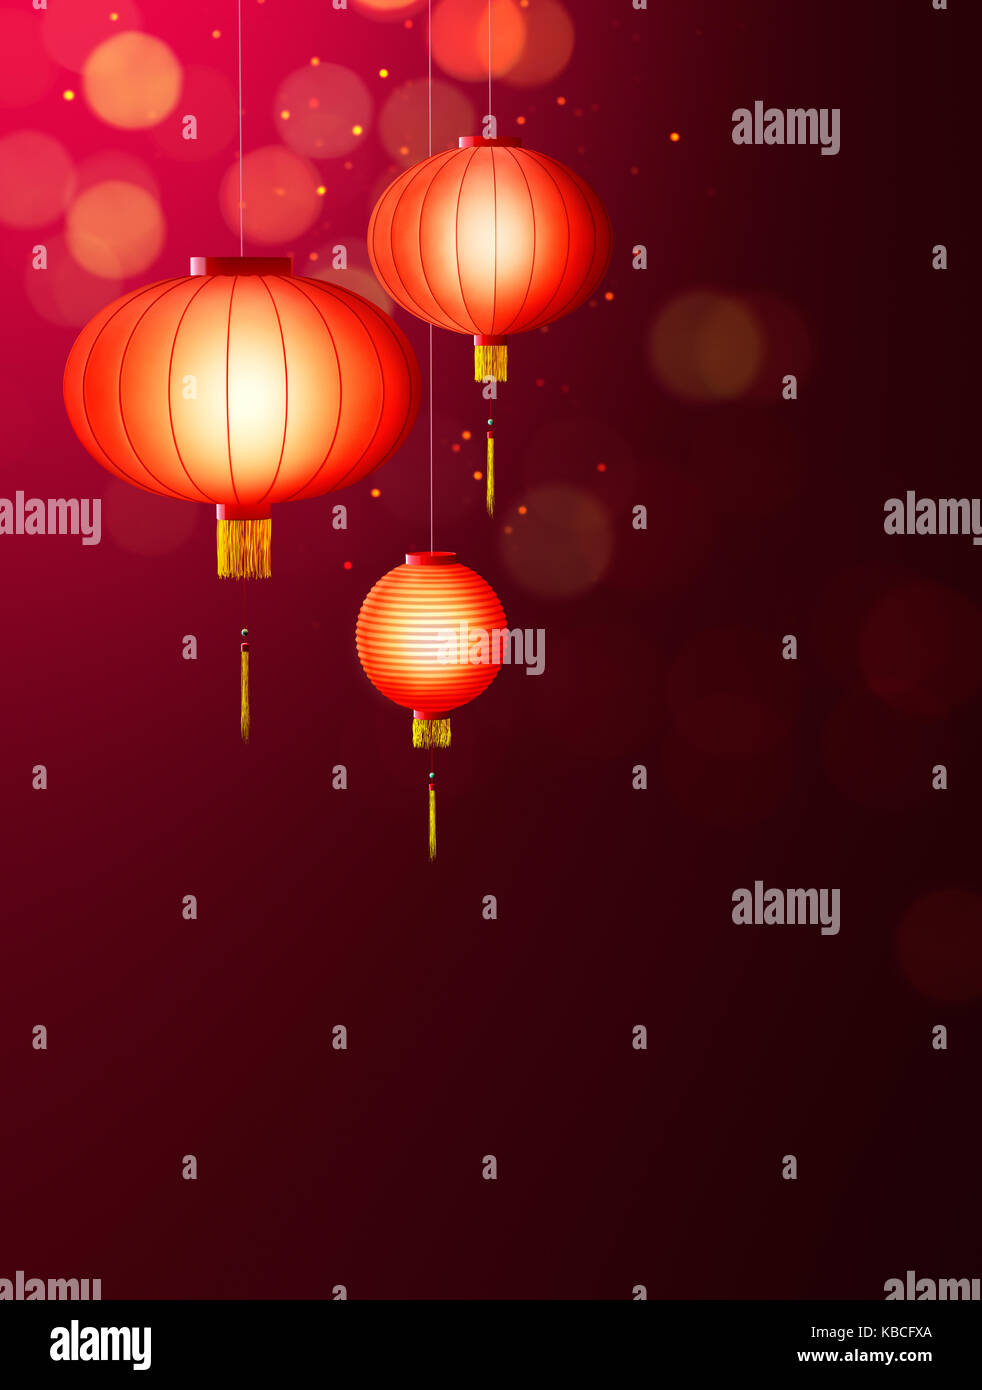 Chinese New Year - Hanging Chinese lanterns Stock Photo